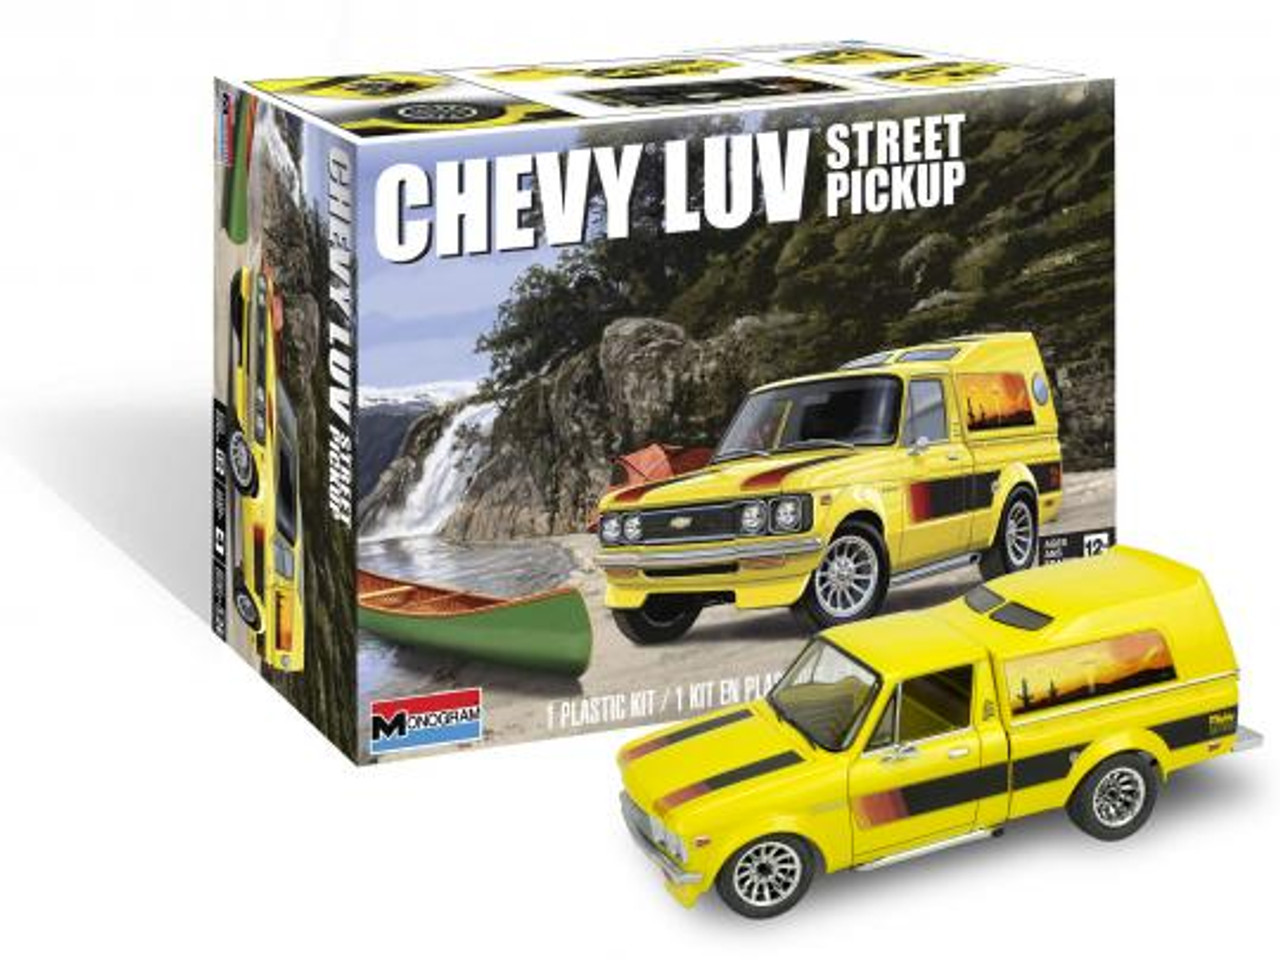 Revell 85-4493 1/24 Chevy LUV Street Pickup Plastic Model Kit